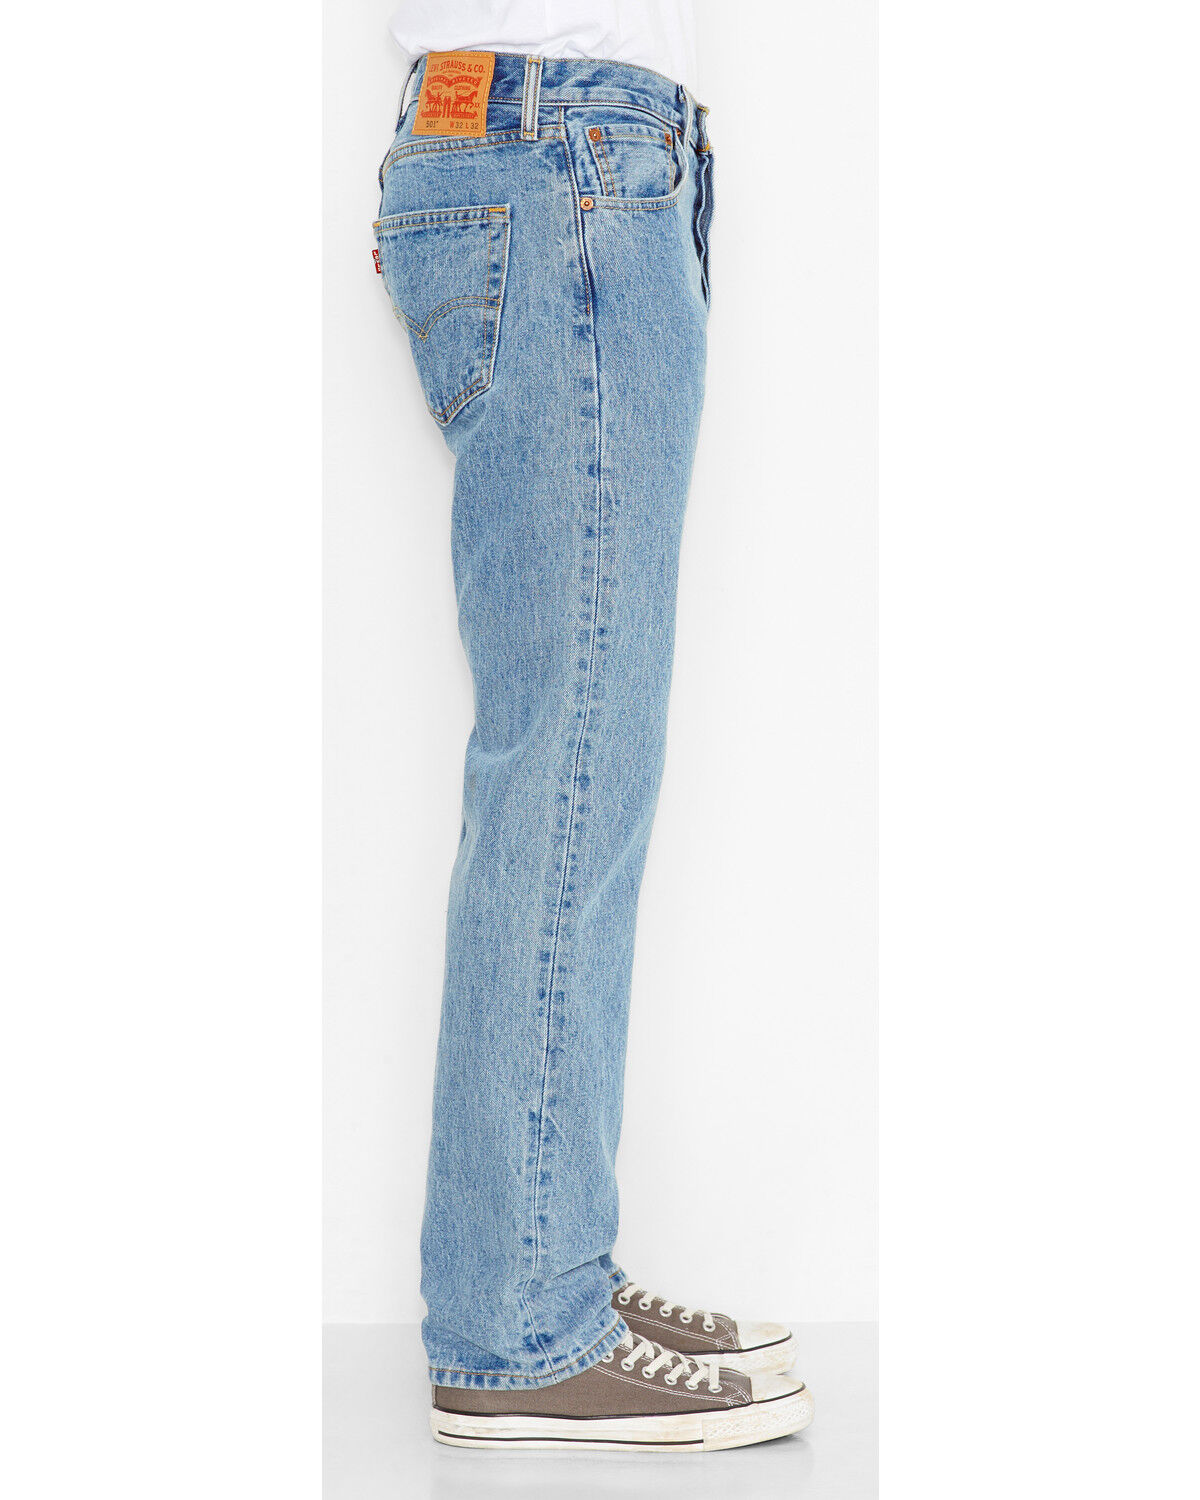 levis 501 mens jeans